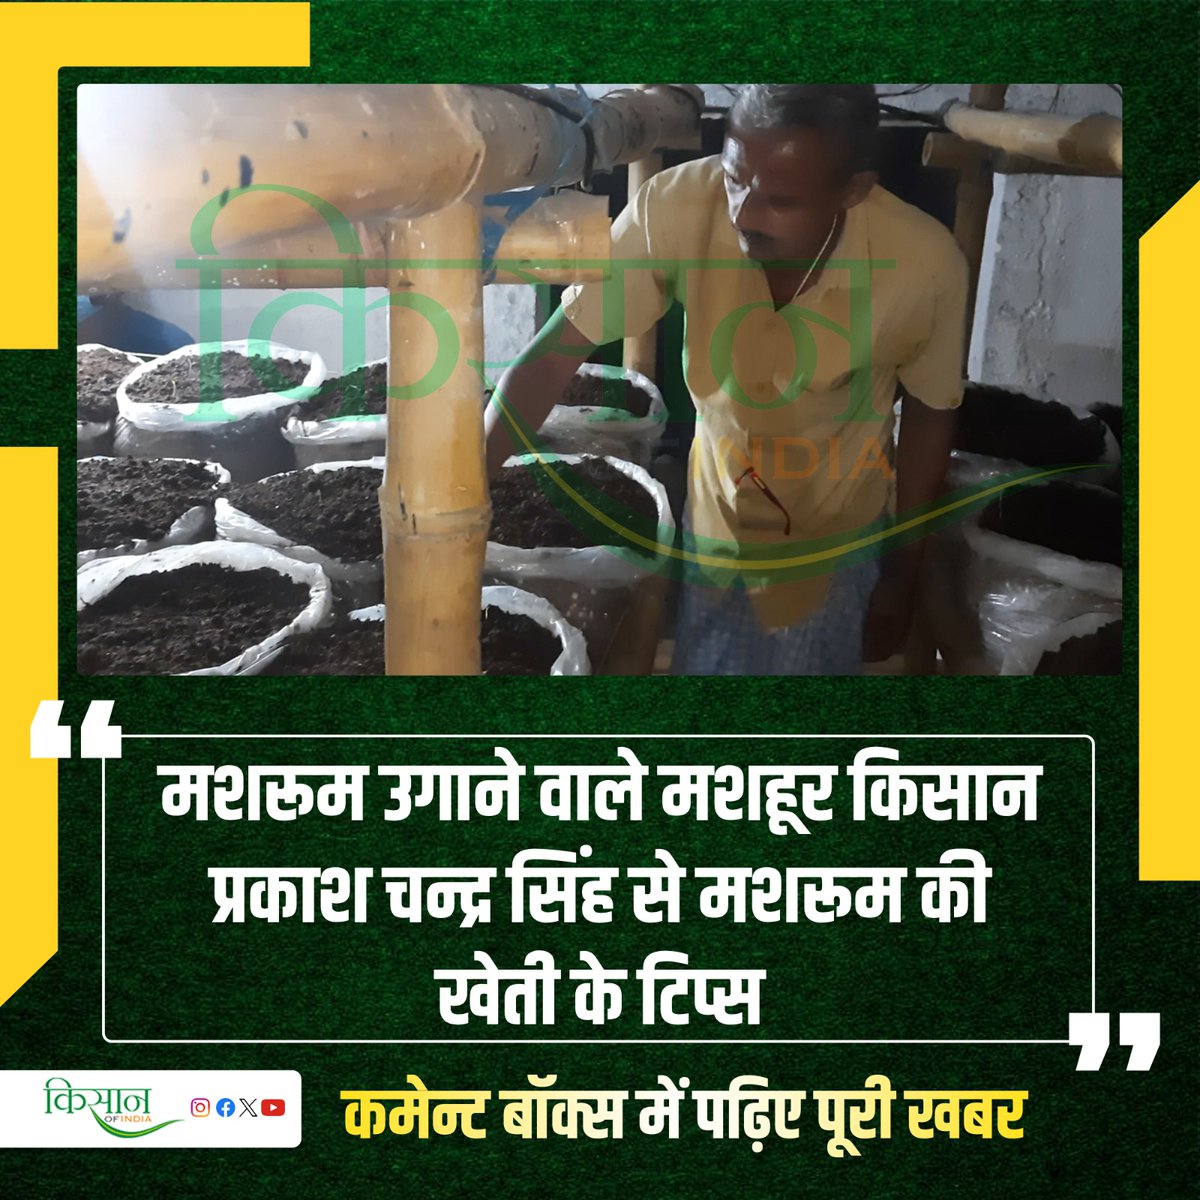 किसान प्रकाश चन्द्र कर रहे हैं वैज्ञानिक तकनीक से मशरुम का उत्पादन
#KisanOfIndia #Agriculture #Mushroom  #MushroomFarming #Patna #Kisan #MushroomBusiness